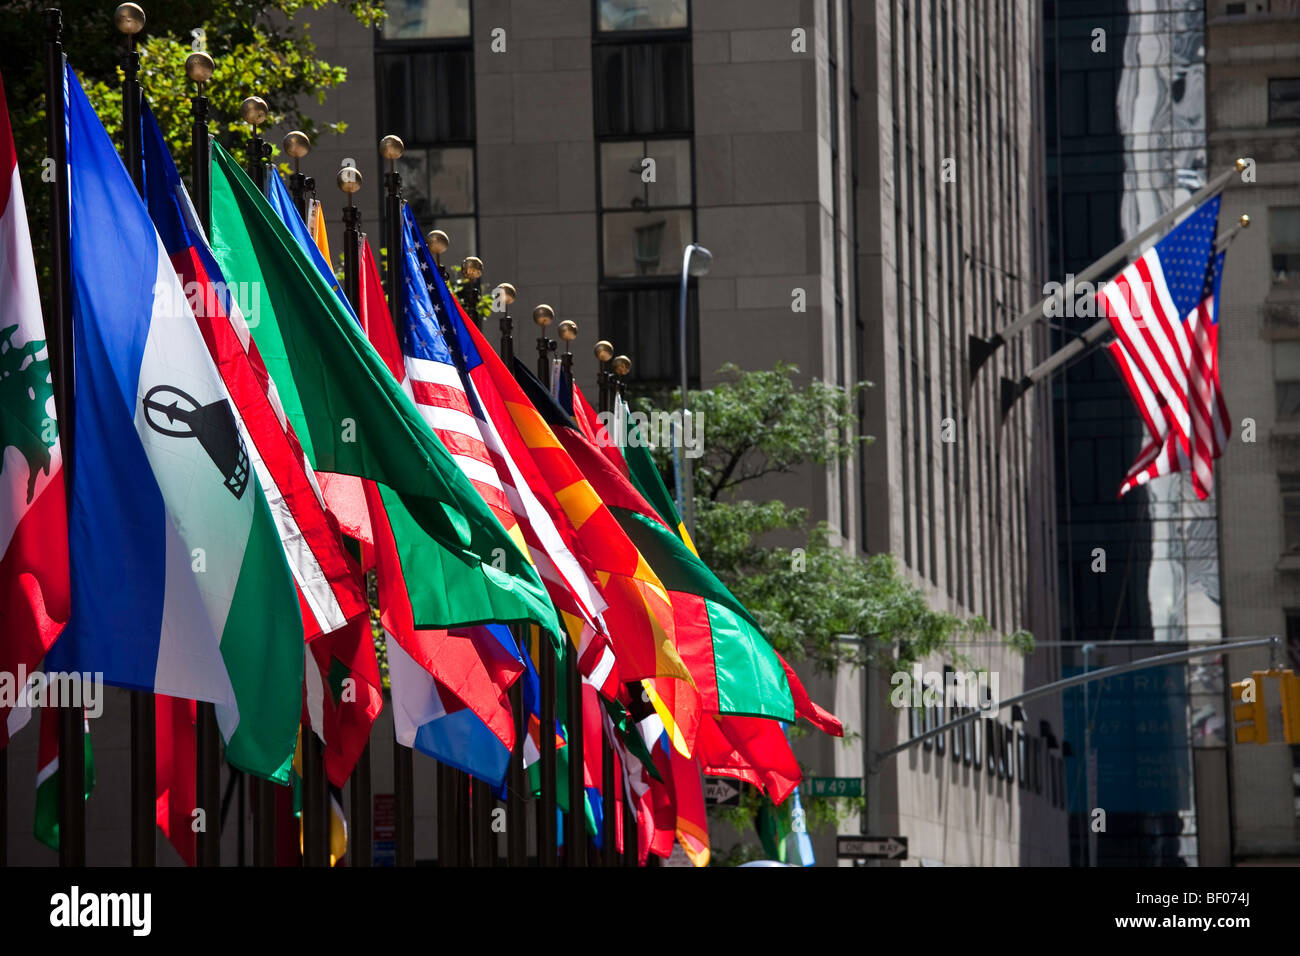 Flags in Rockefeller Center, New York City Stock Photo